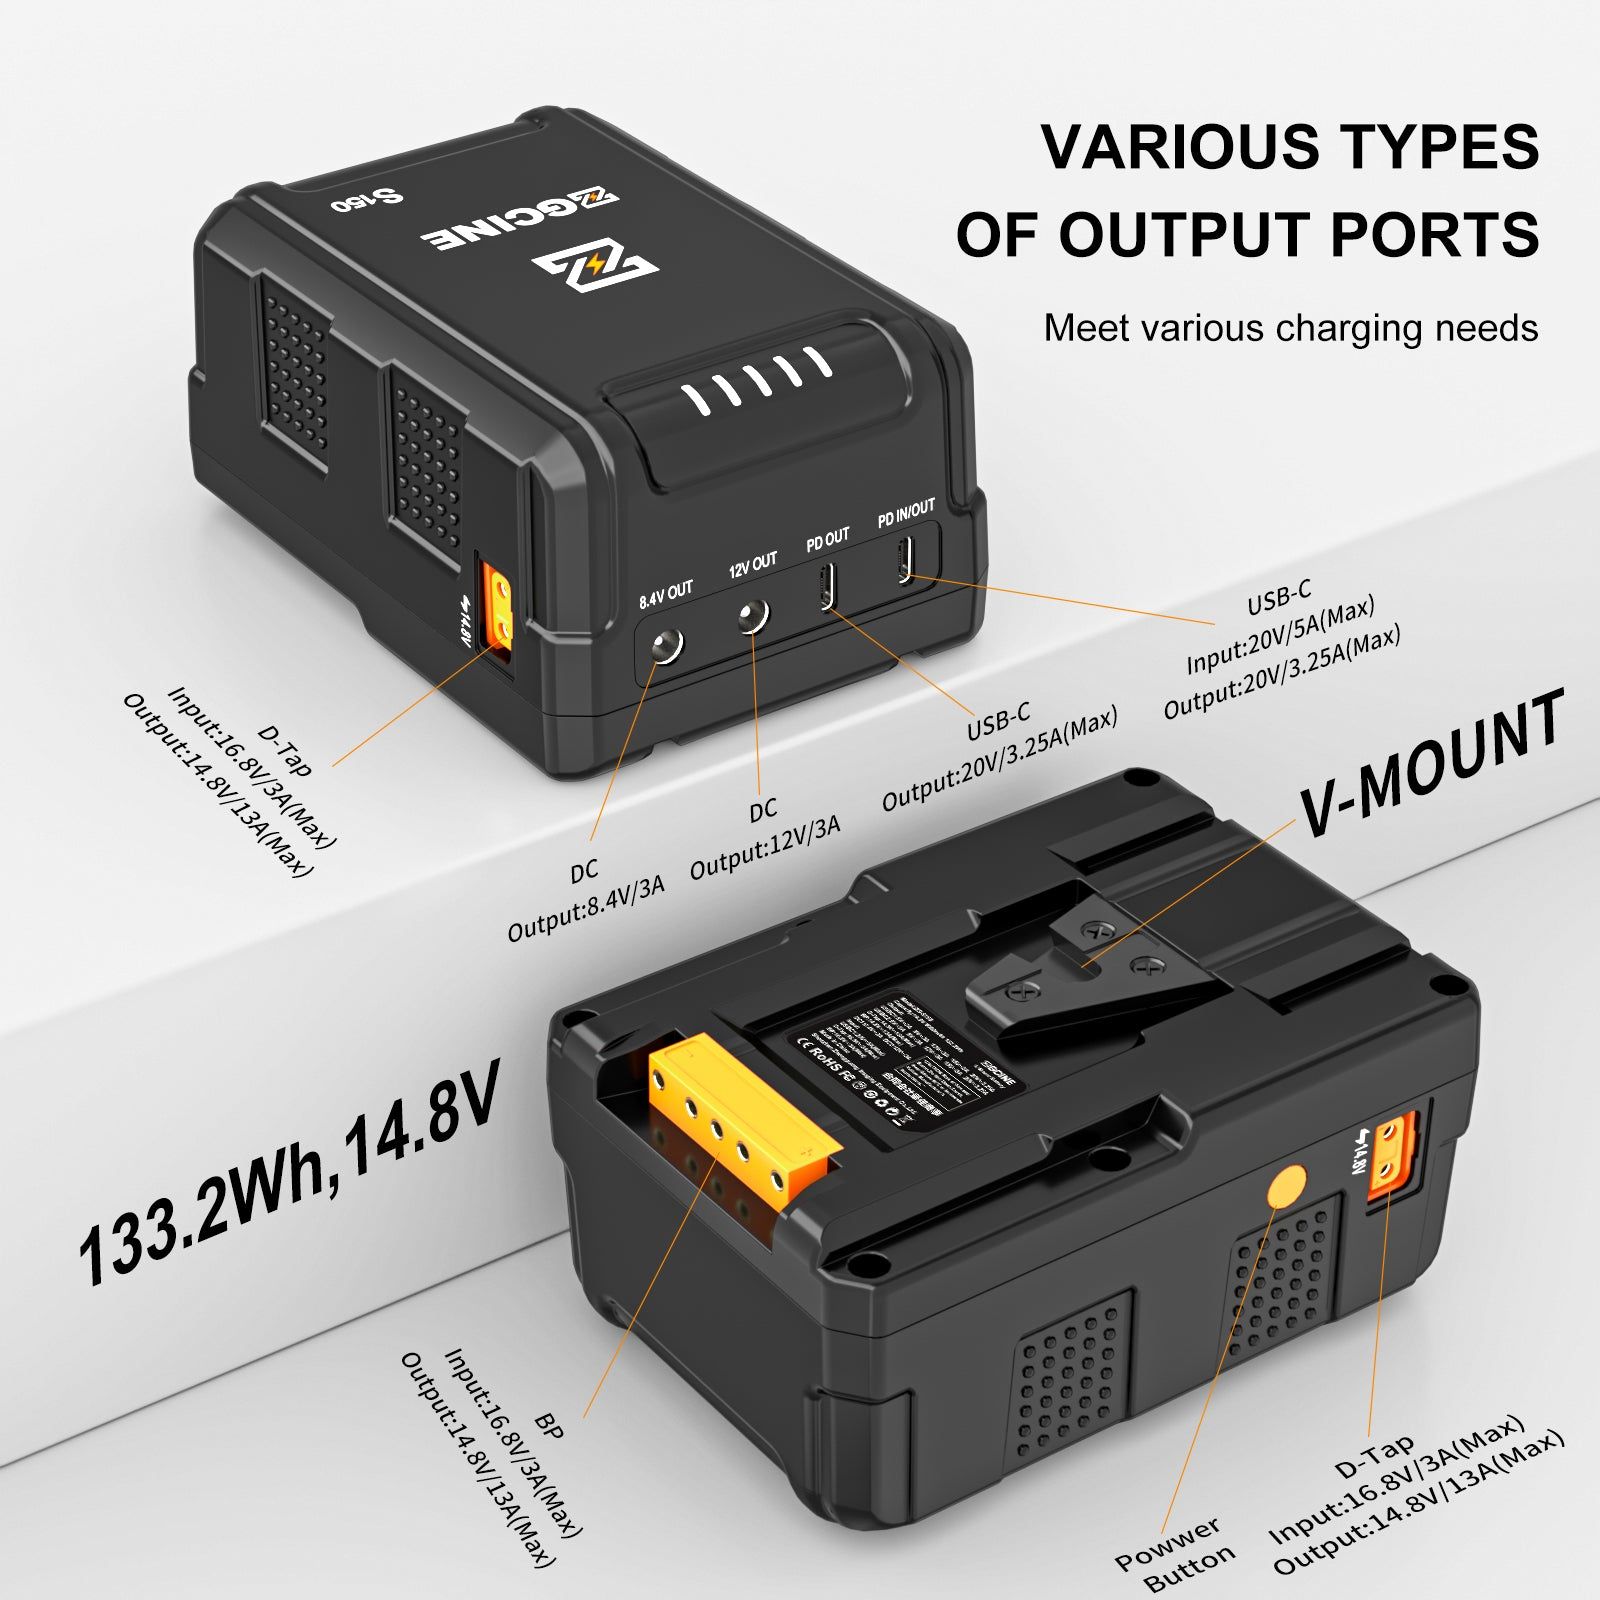  ZG-S150 V Mount Battery - Pin ZGCINE S150 